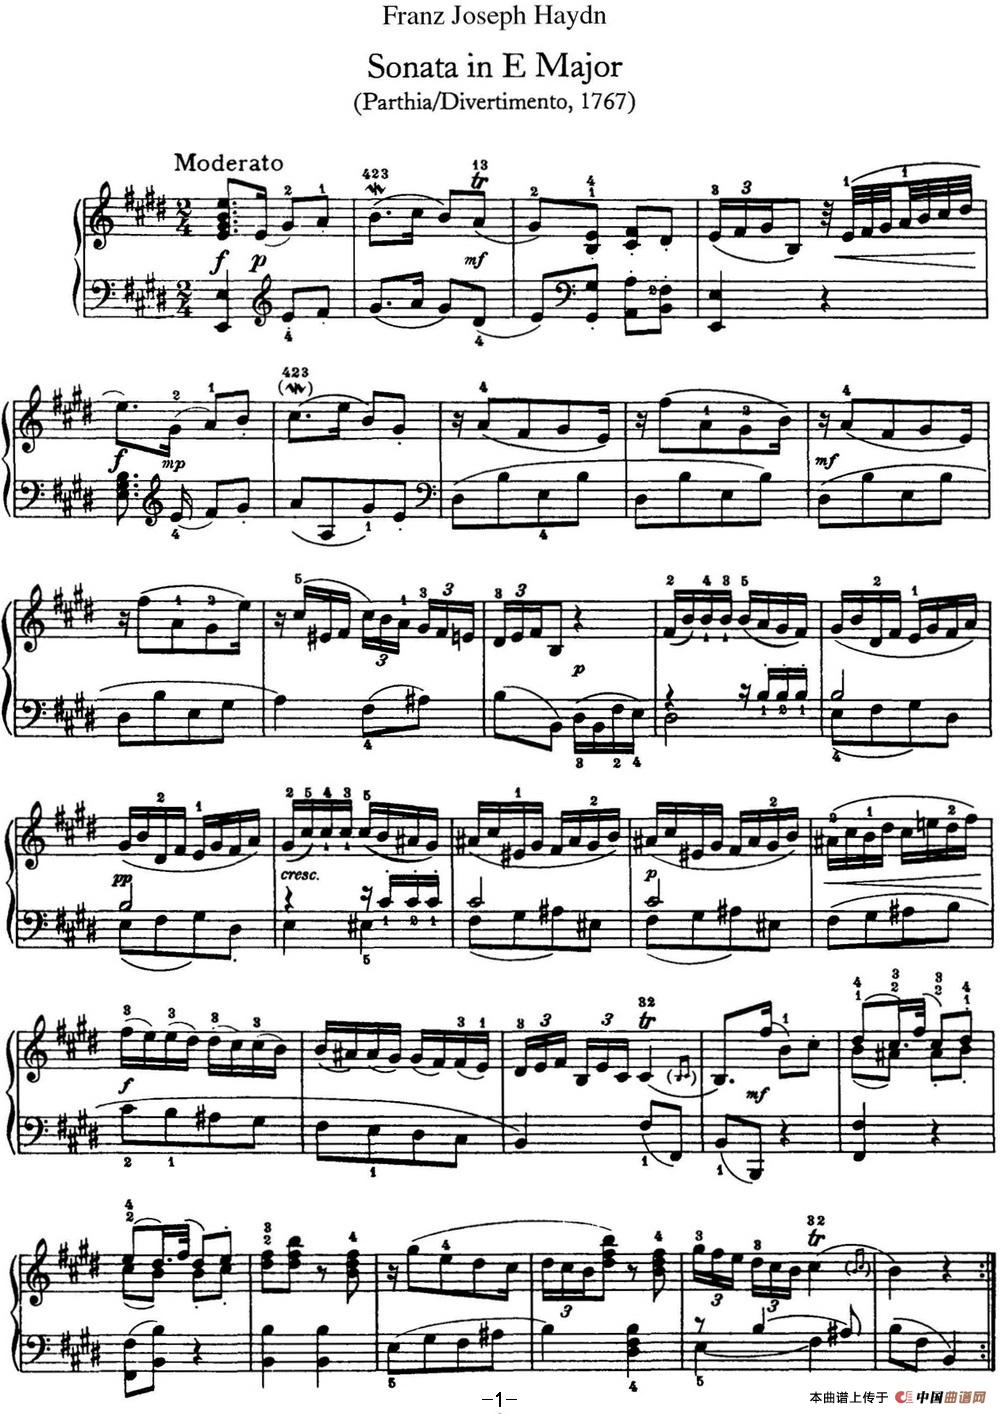 《海顿 钢琴奏鸣曲 Hob XVI 13 Partita E major》钢琴曲谱图分享